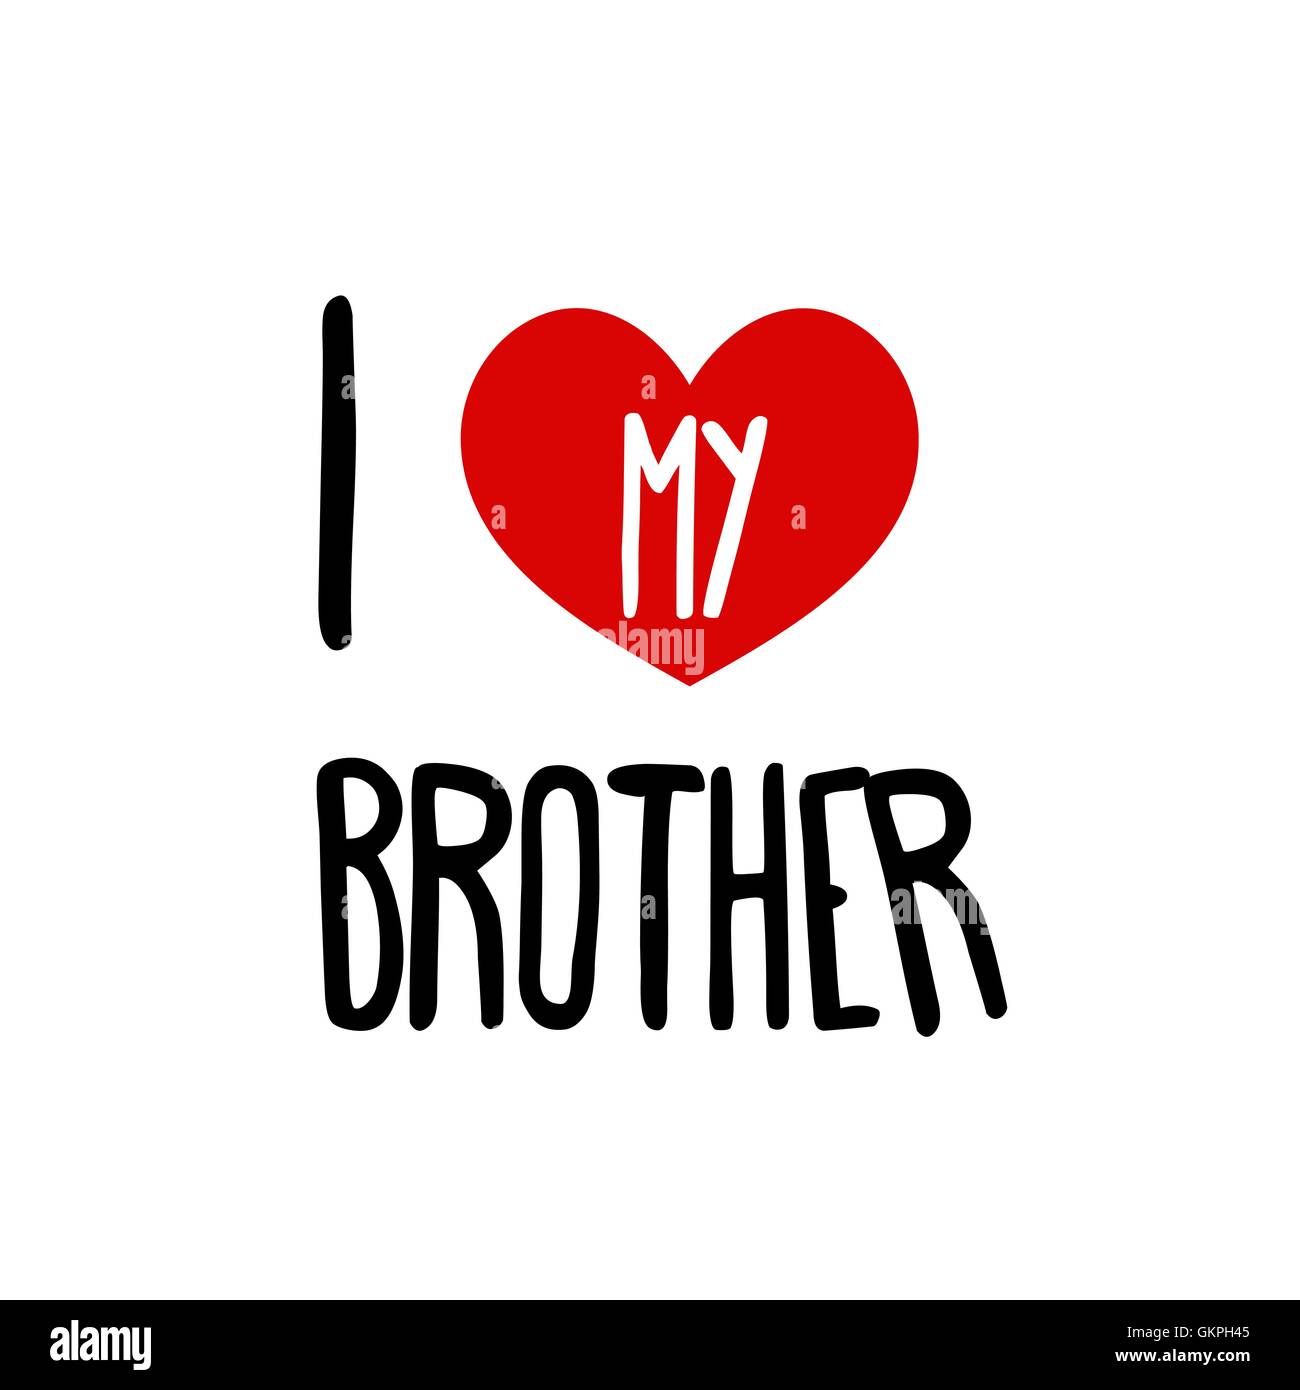 Io amo il mio fratello. Famiglia cuore rosso simbolo semplice sfondo bianco. Iscrizione calligrafico, scritte, disegnati a mano, il vettore Illustrazione Vettoriale